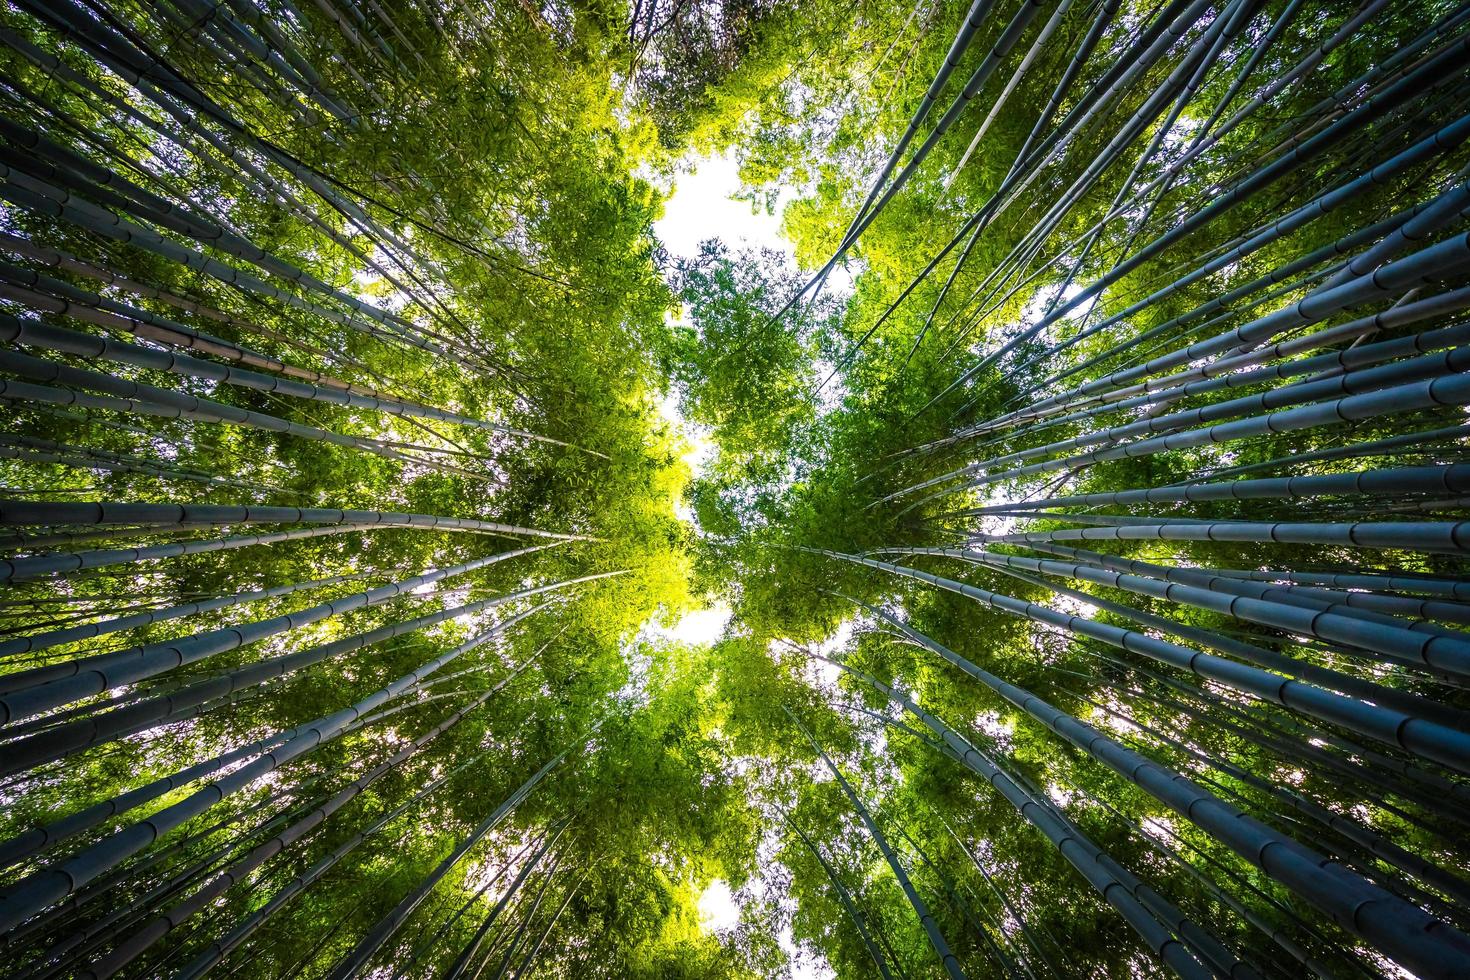 Bambouseraie dans la forêt à arashiyama, kyoto photo